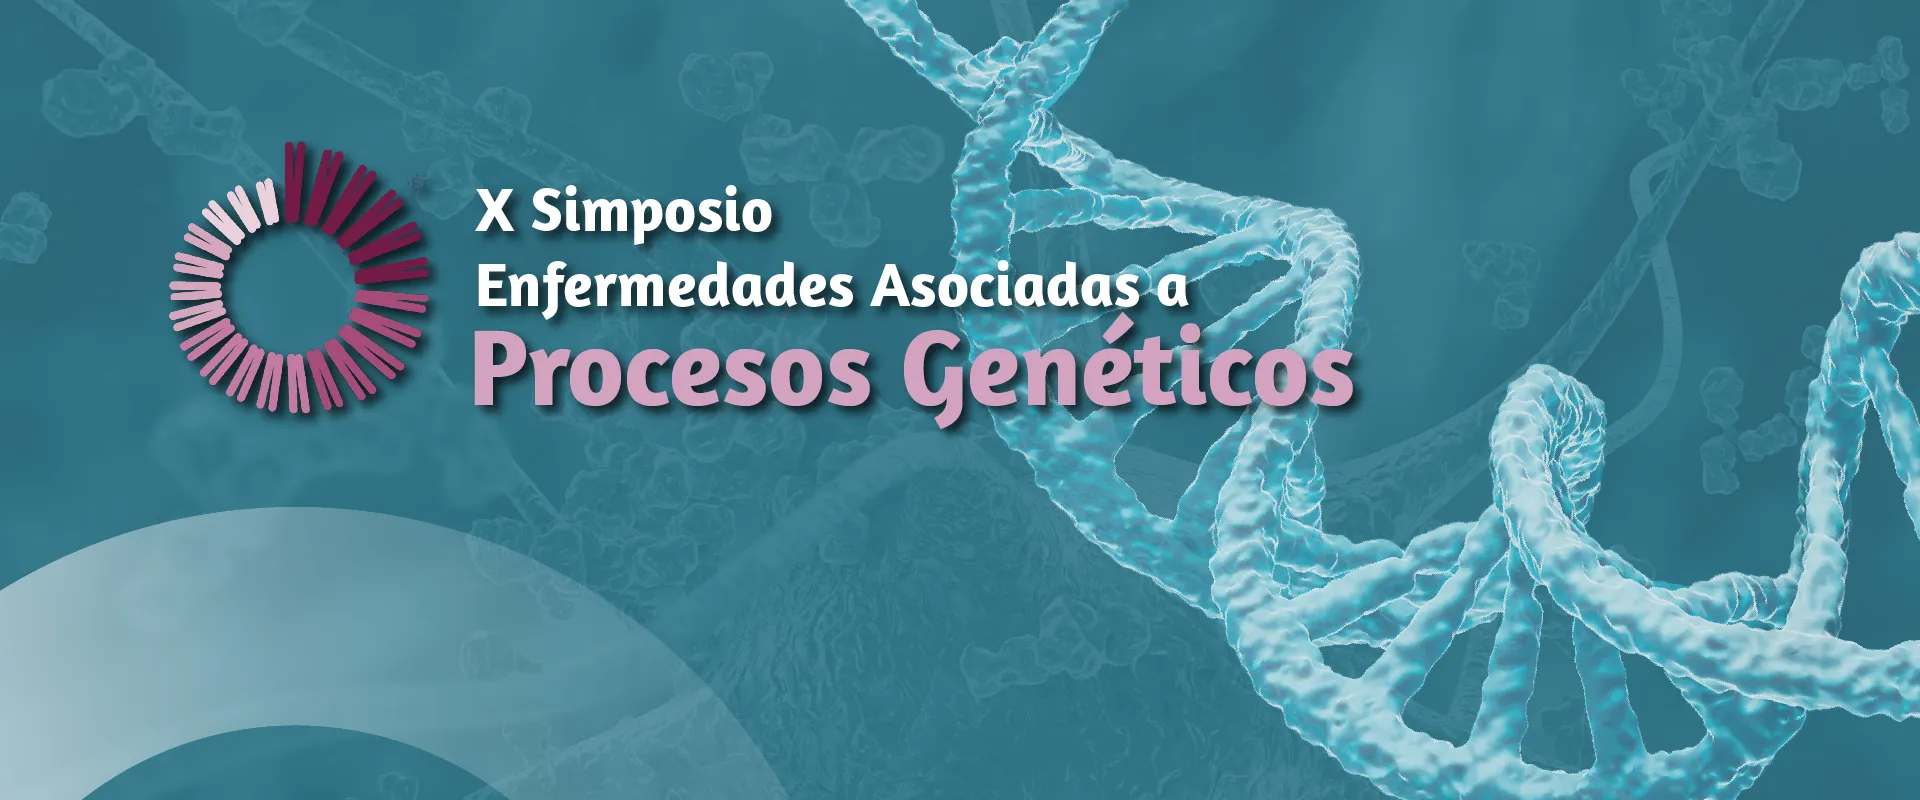 Simposio de enfermedades asociadas a procesos genéticos